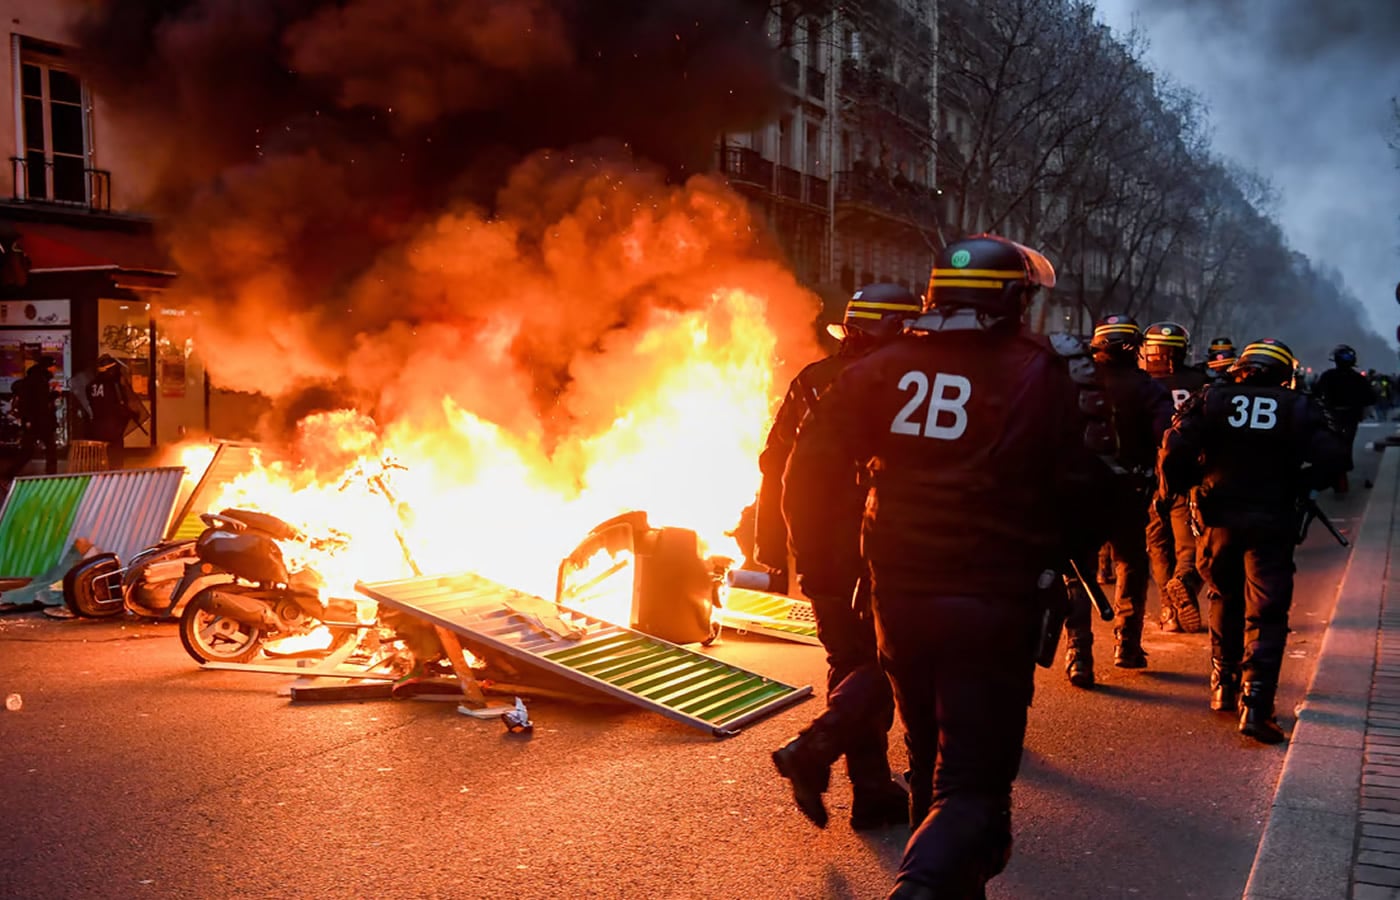 Το δημαρχείο του Μπορντό πυρπολήθηκε καθώς οι γαλλικές διαδηλώσεις συνεχίζονται για τα σχέδια για αύξηση της ηλικίας συνταξιοδότησης.